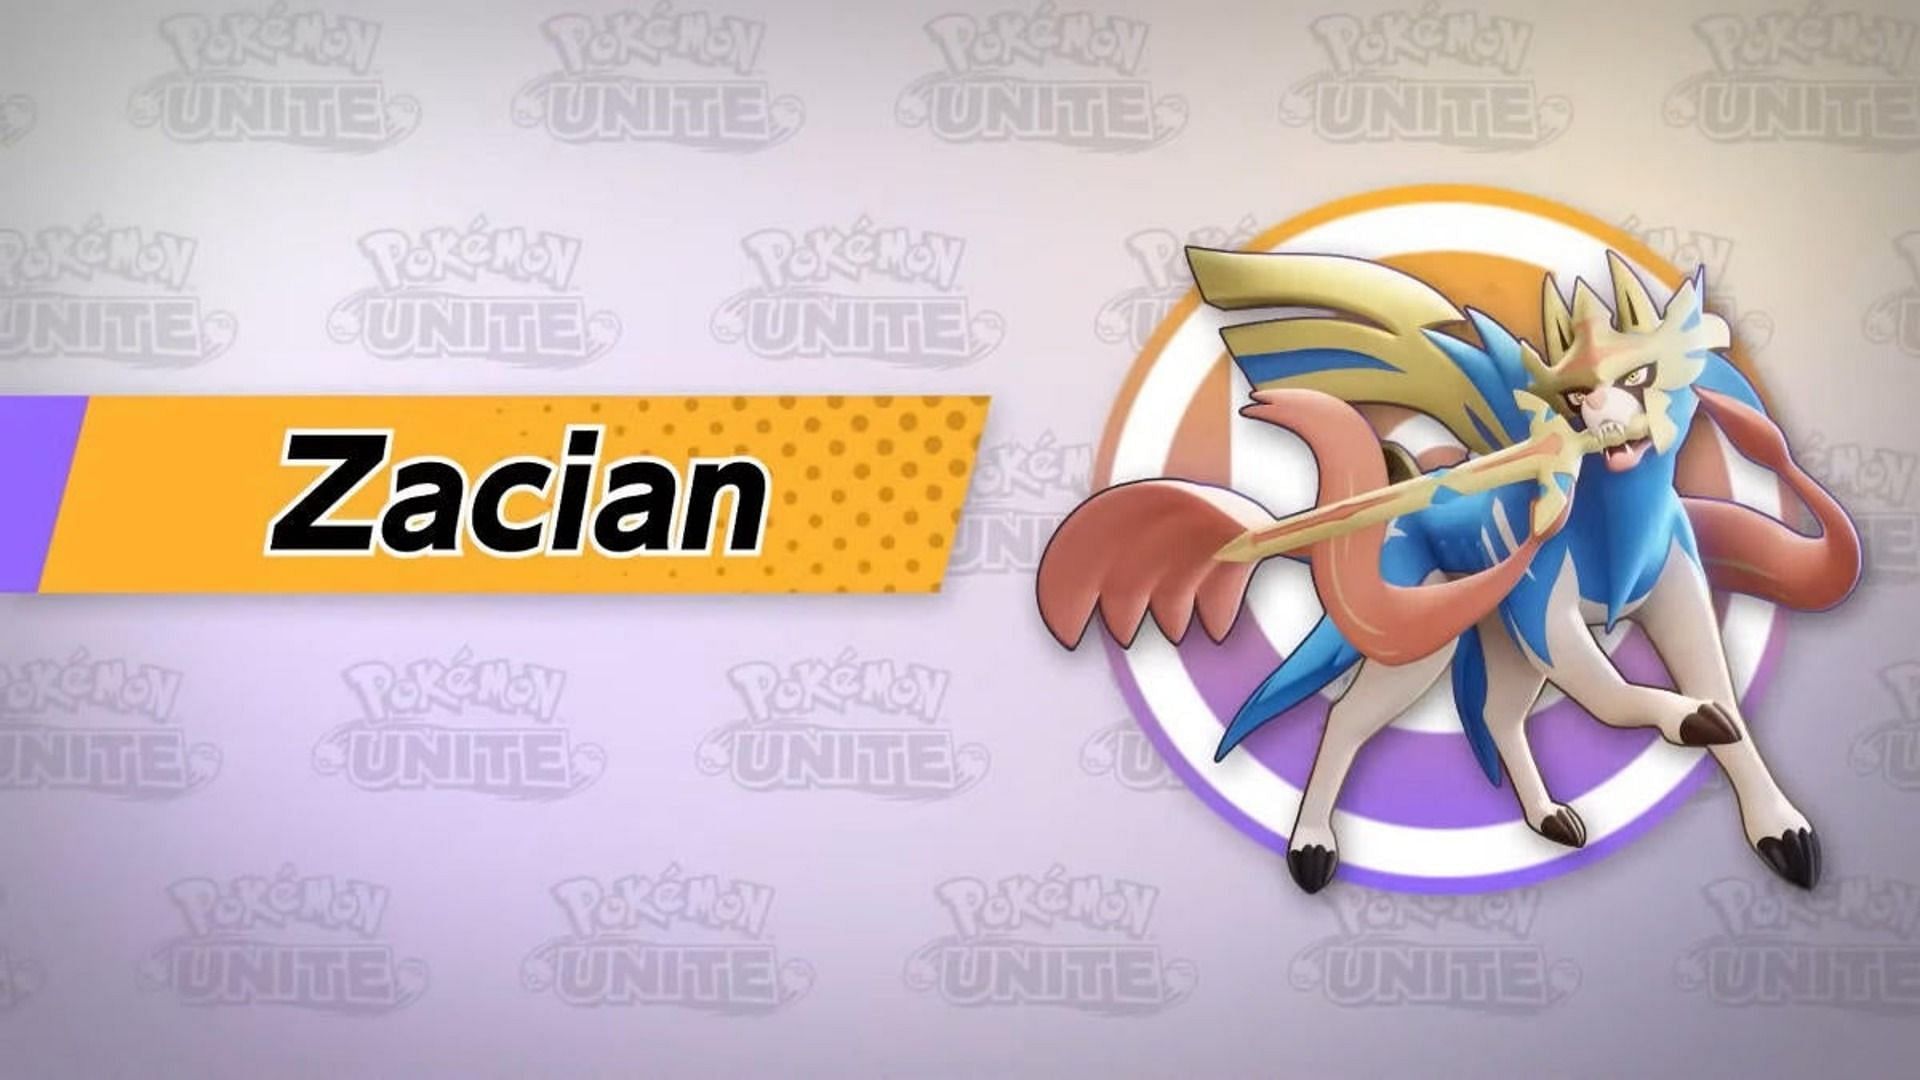 Pokémon of the Week - Zacian